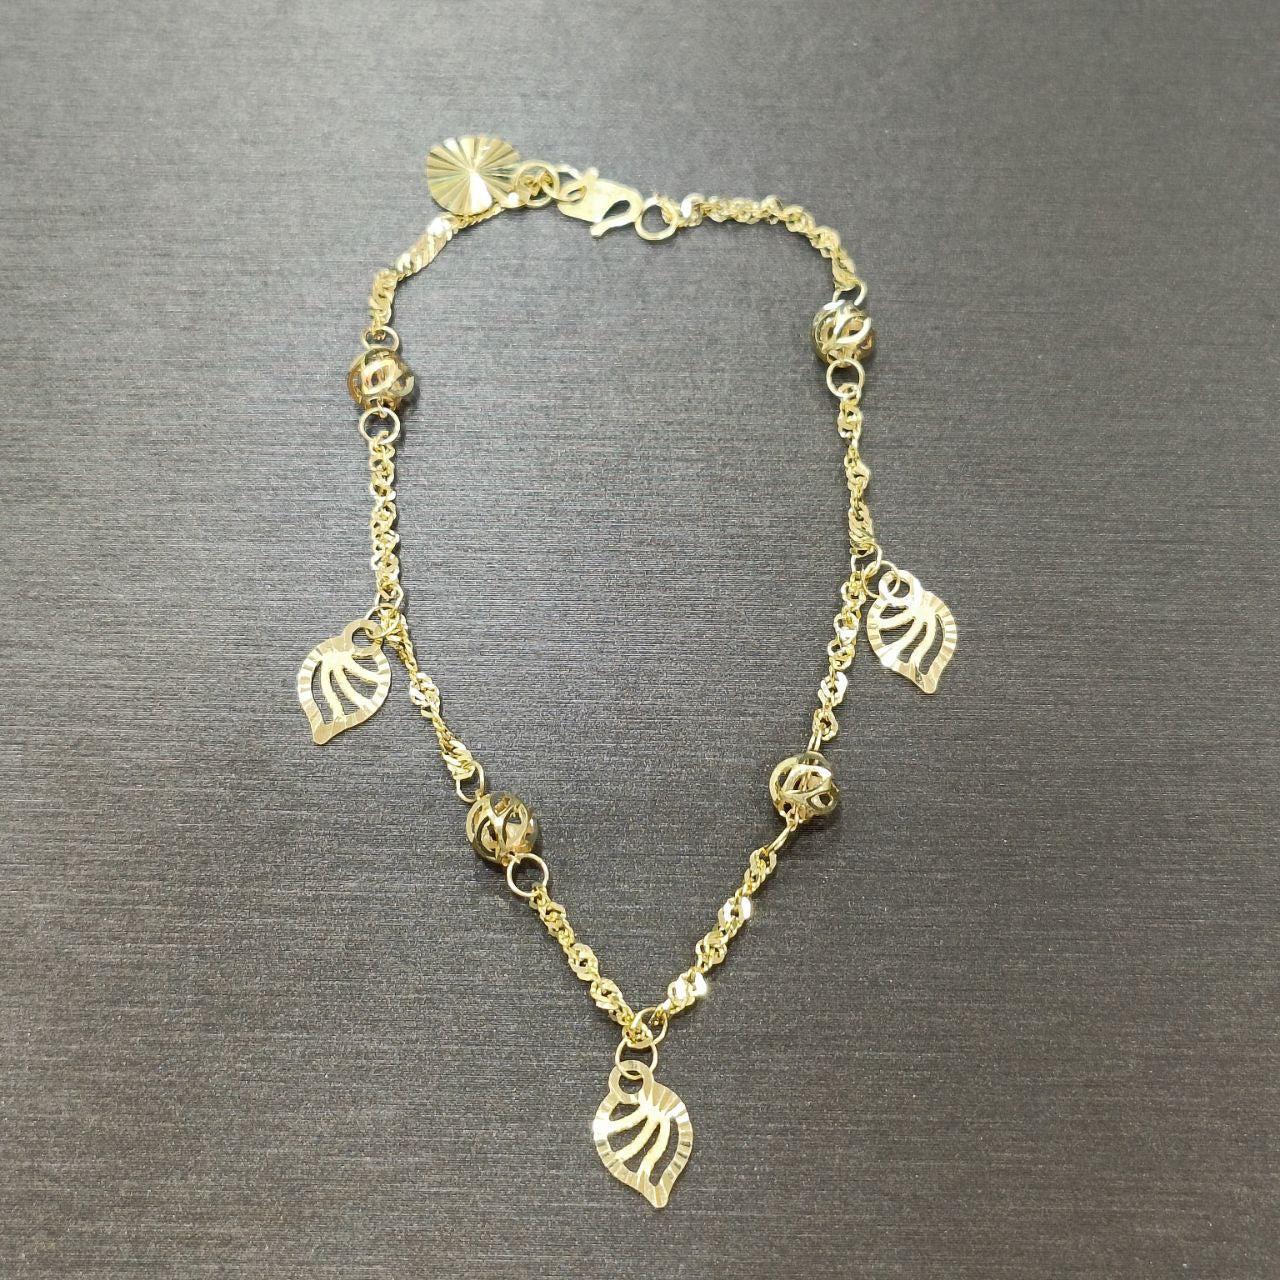 22k / 916 Gold Dangling bracelet V3-916 gold-Best Gold Shop